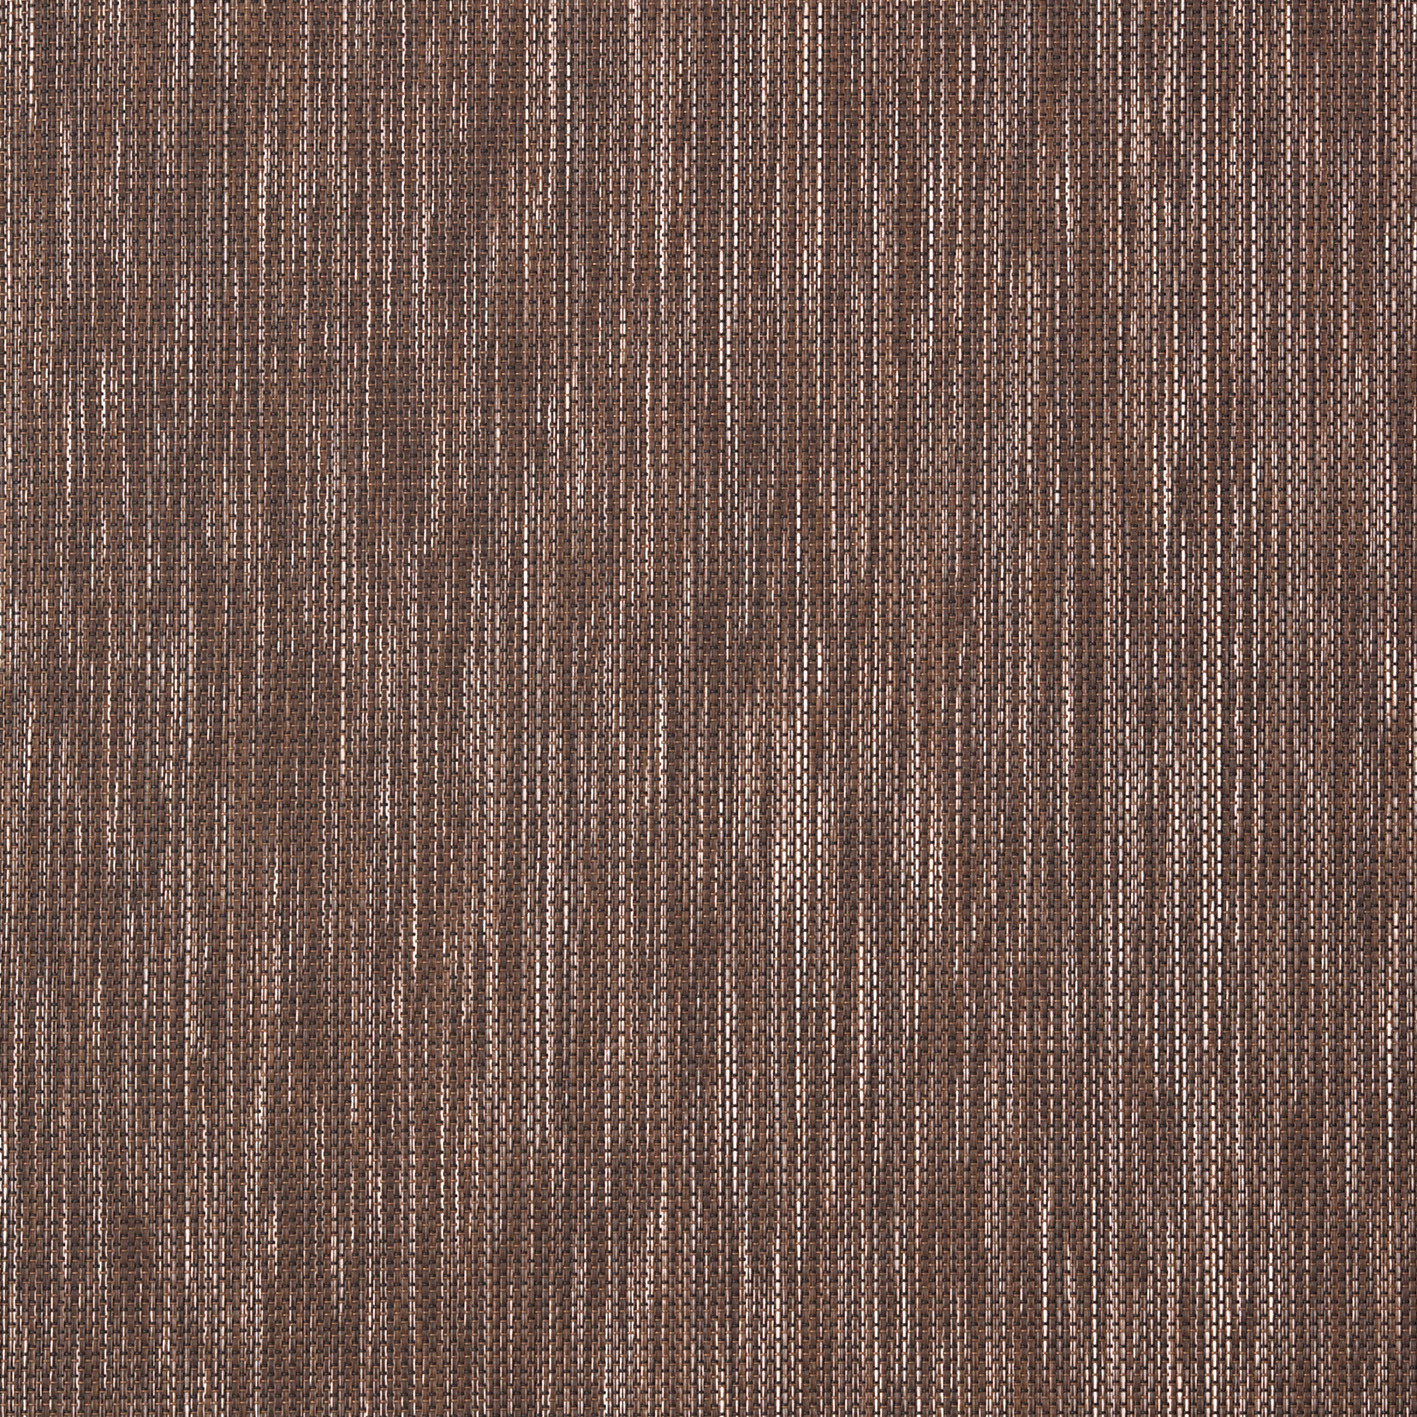 5803 川島織物セルコン 床タイル ウェイフロア ペイトン 川島織物セルコン フロアタイル